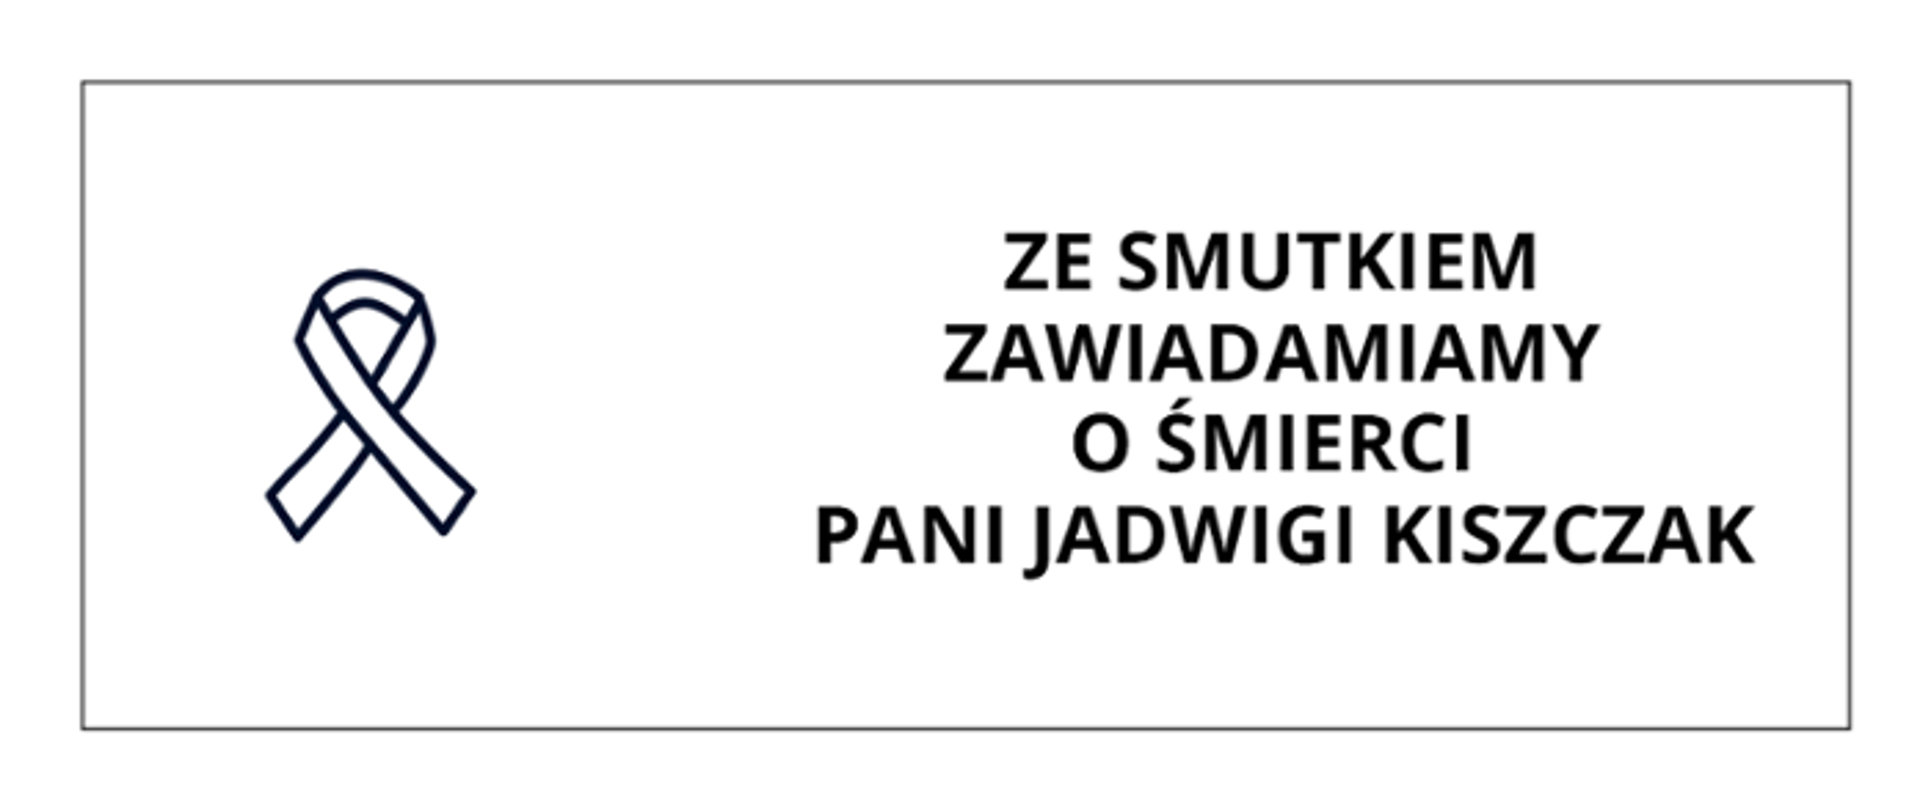 Wstążka na białym tle. Z prawej napis: "Ze smutkiem zawiadamiamy o śmierci Pani Jadwigi Kiszczak" w kolorze czarnym.